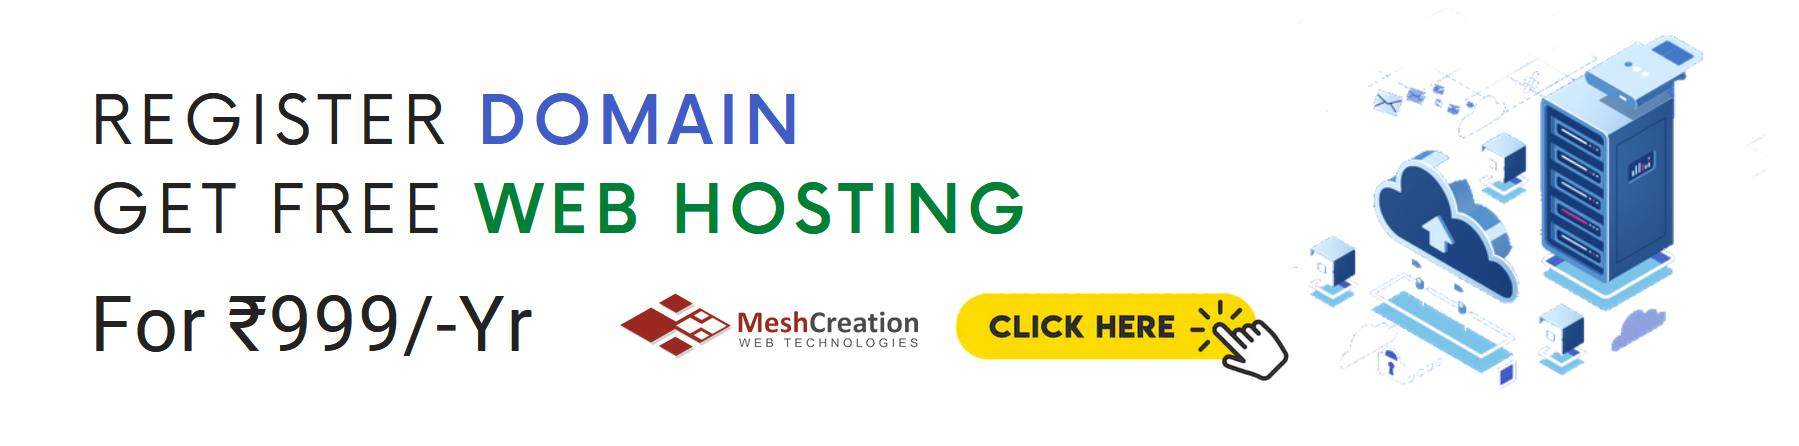 Domain Registration get free hosting